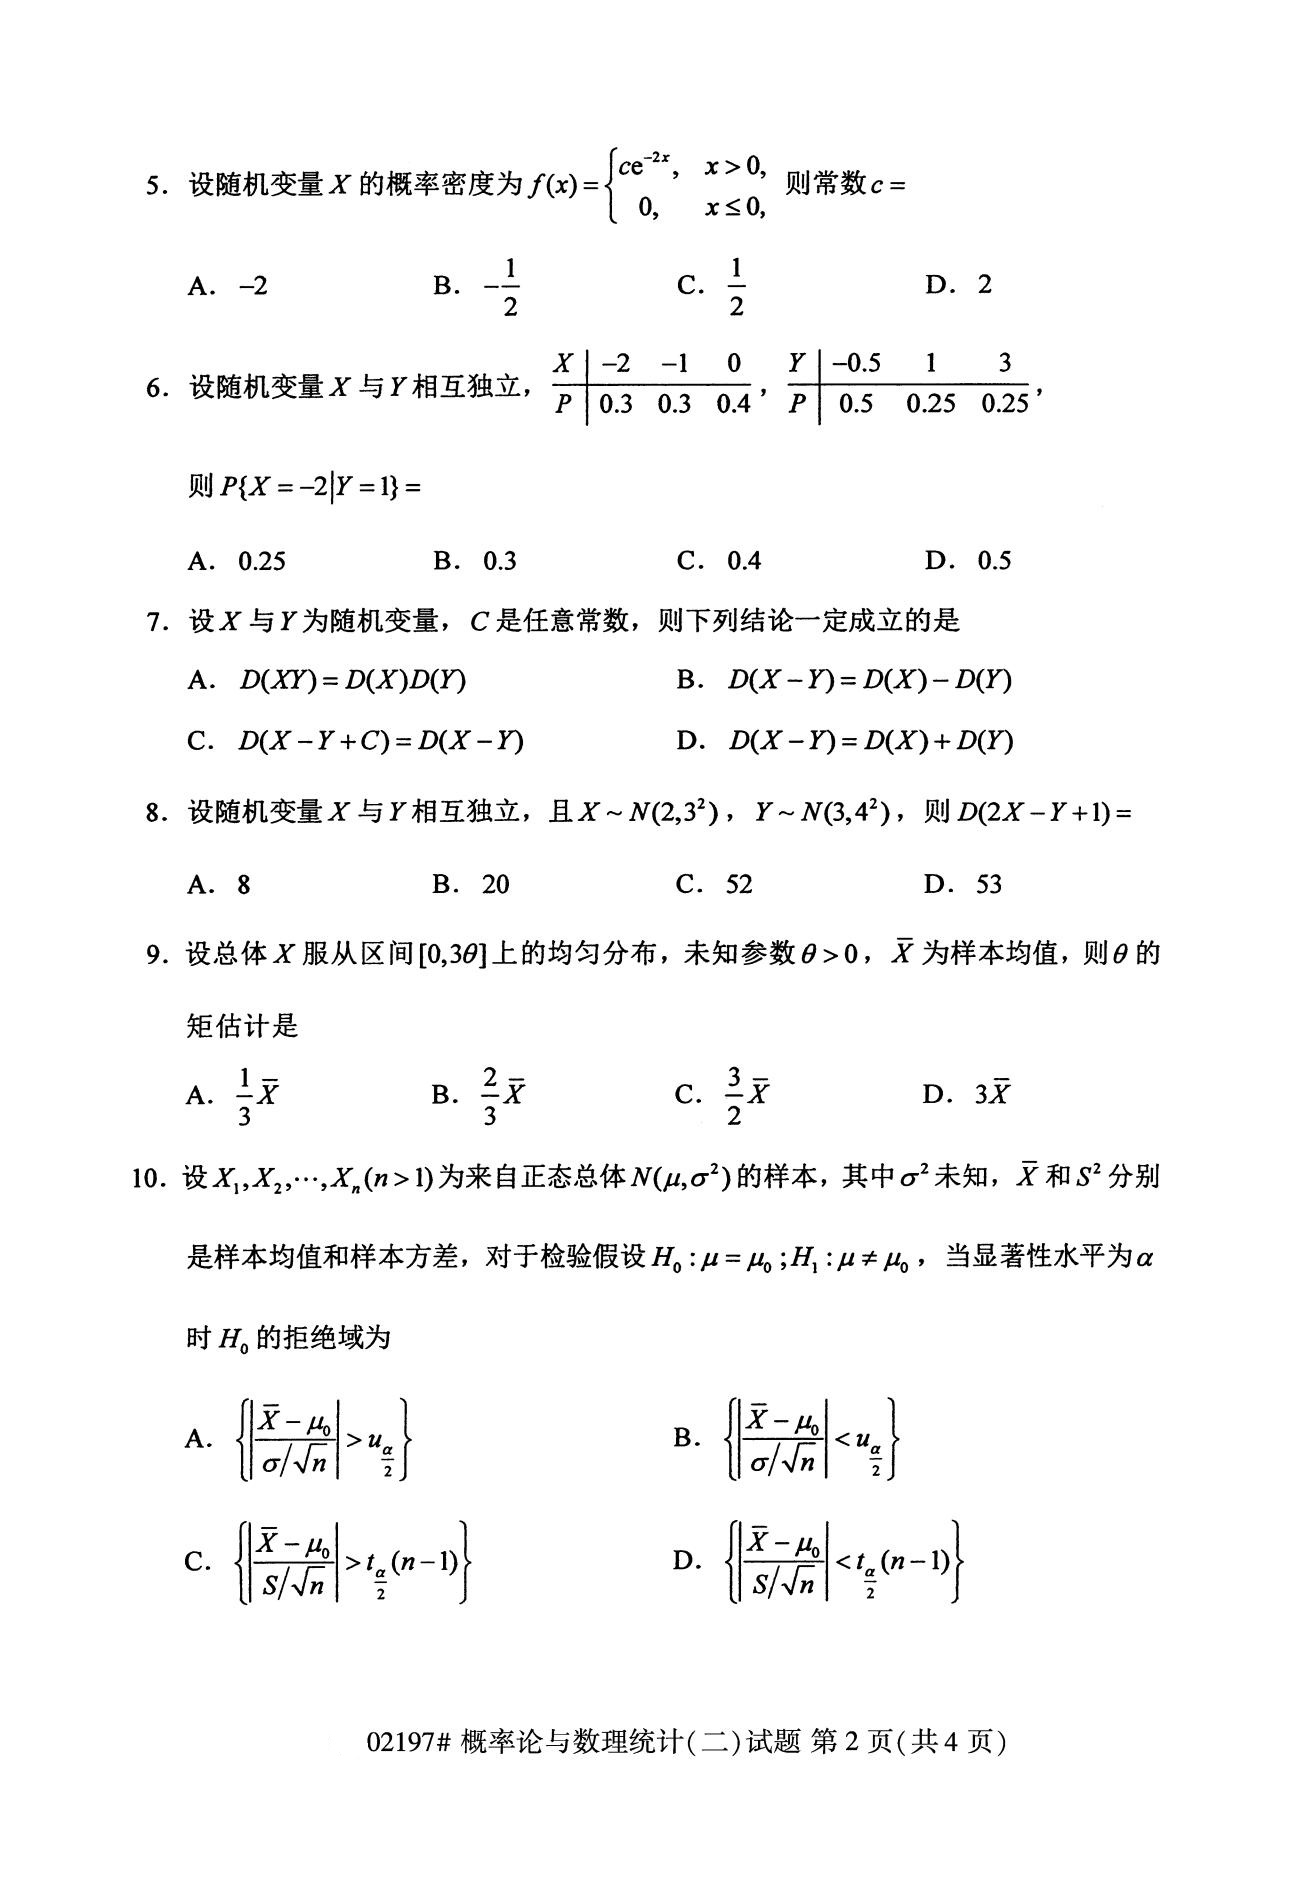 2020年8月辽宁省自学考试本科概率论与数理统计(二)真题(图2)